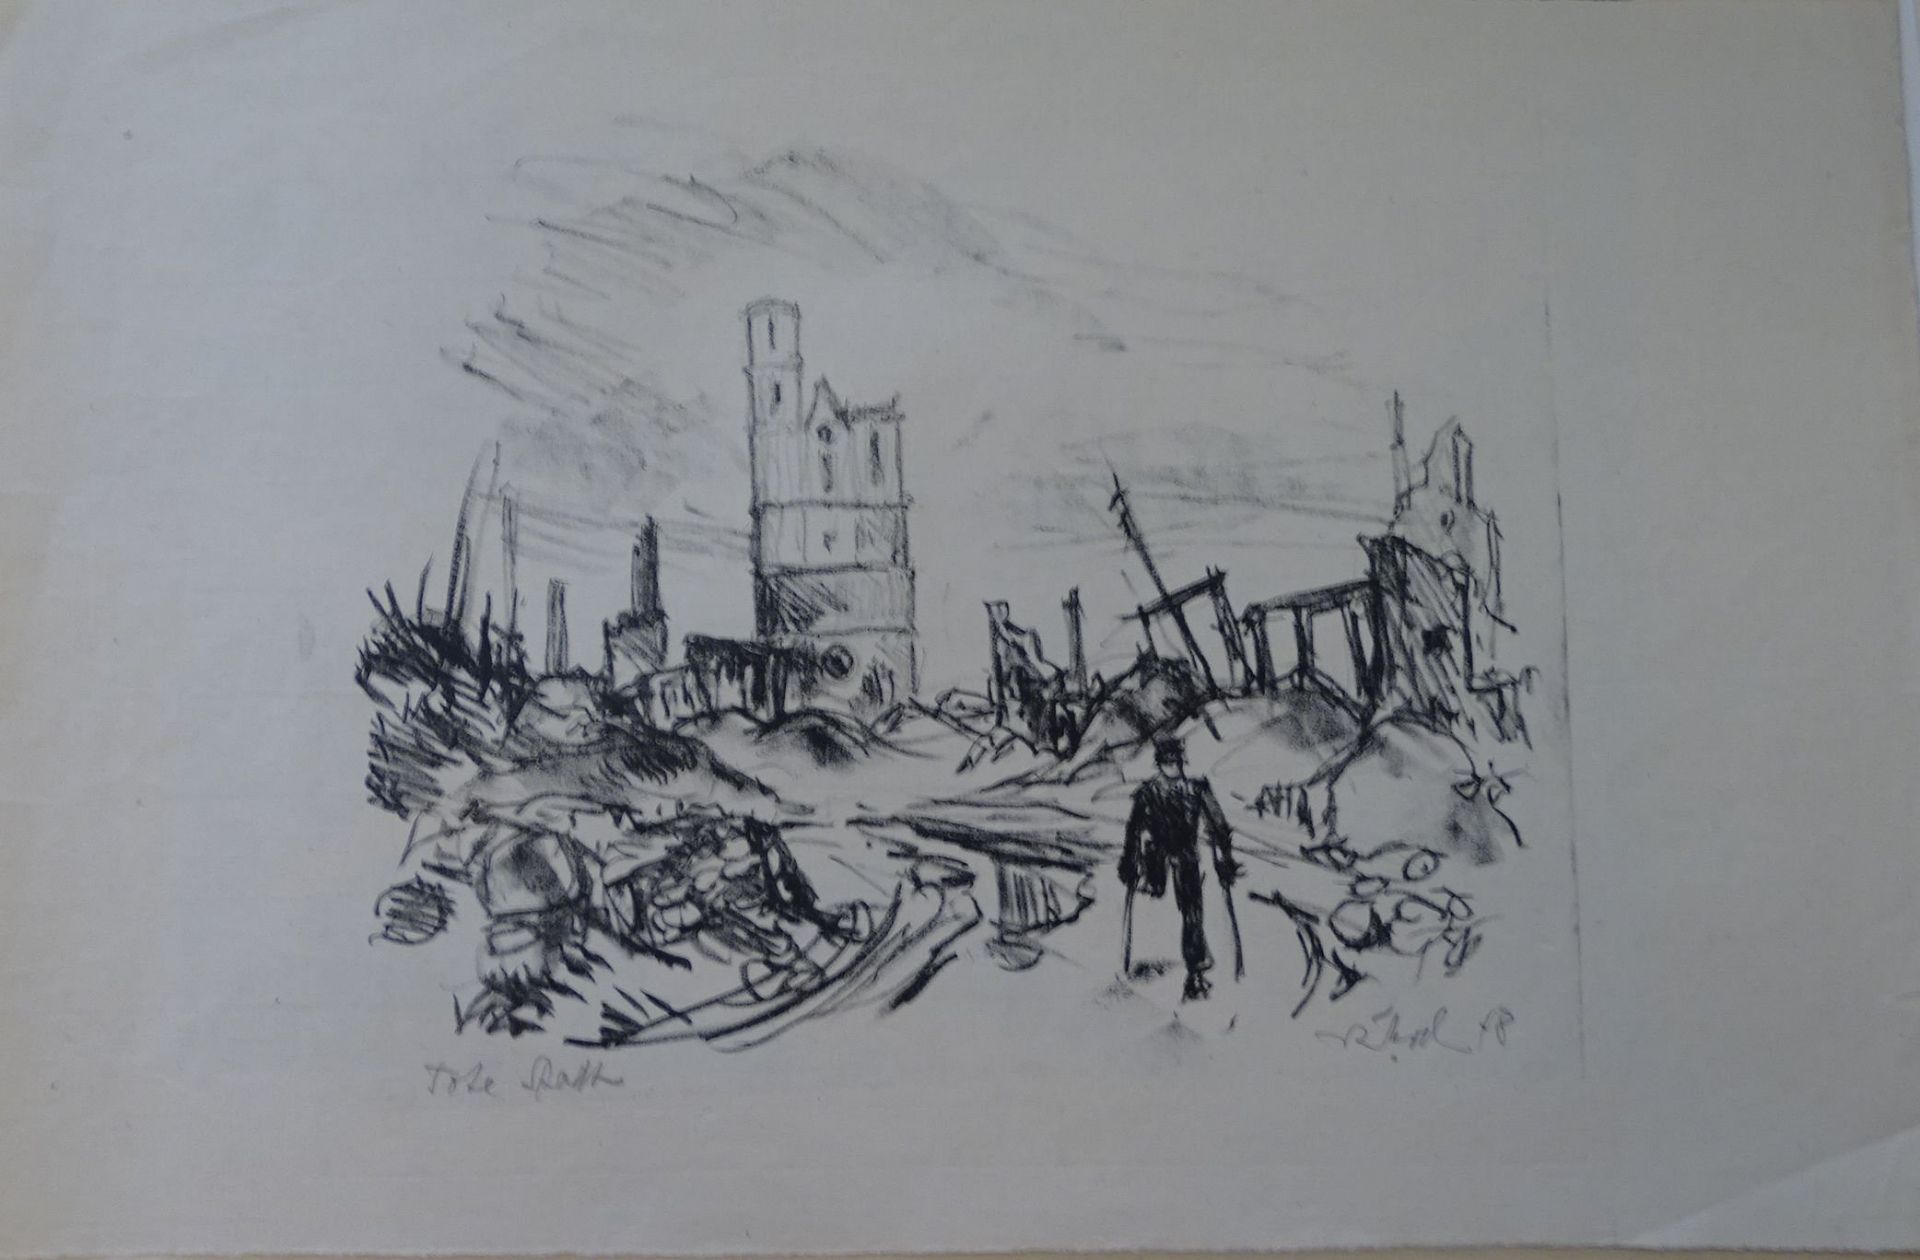 unleserl. signierte Lithografie, Tote Stadt betitelt, 1948, BG 31x48 cm